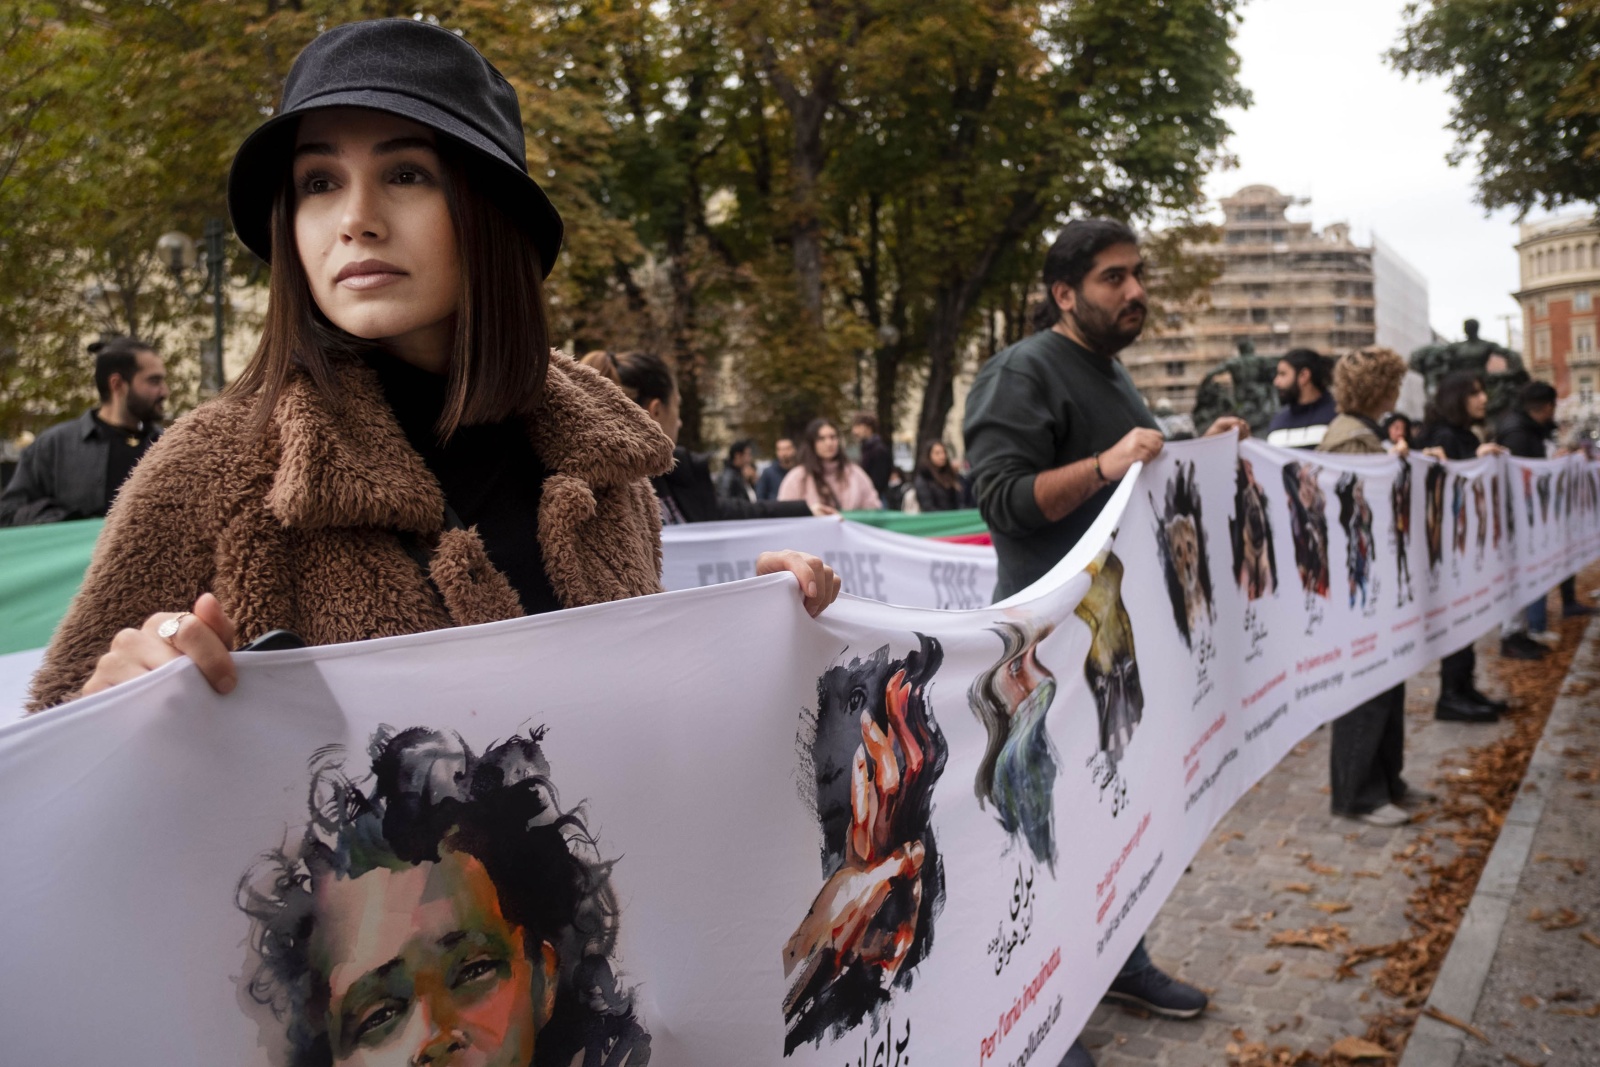  La comunità iraniana è scesa per le strade di Torino per chiedere giustizia per le vittime della repressione e l'immediata liberazione di tutte le persone arrestate dopo la morte Mahsa Amini di 22 anni.
